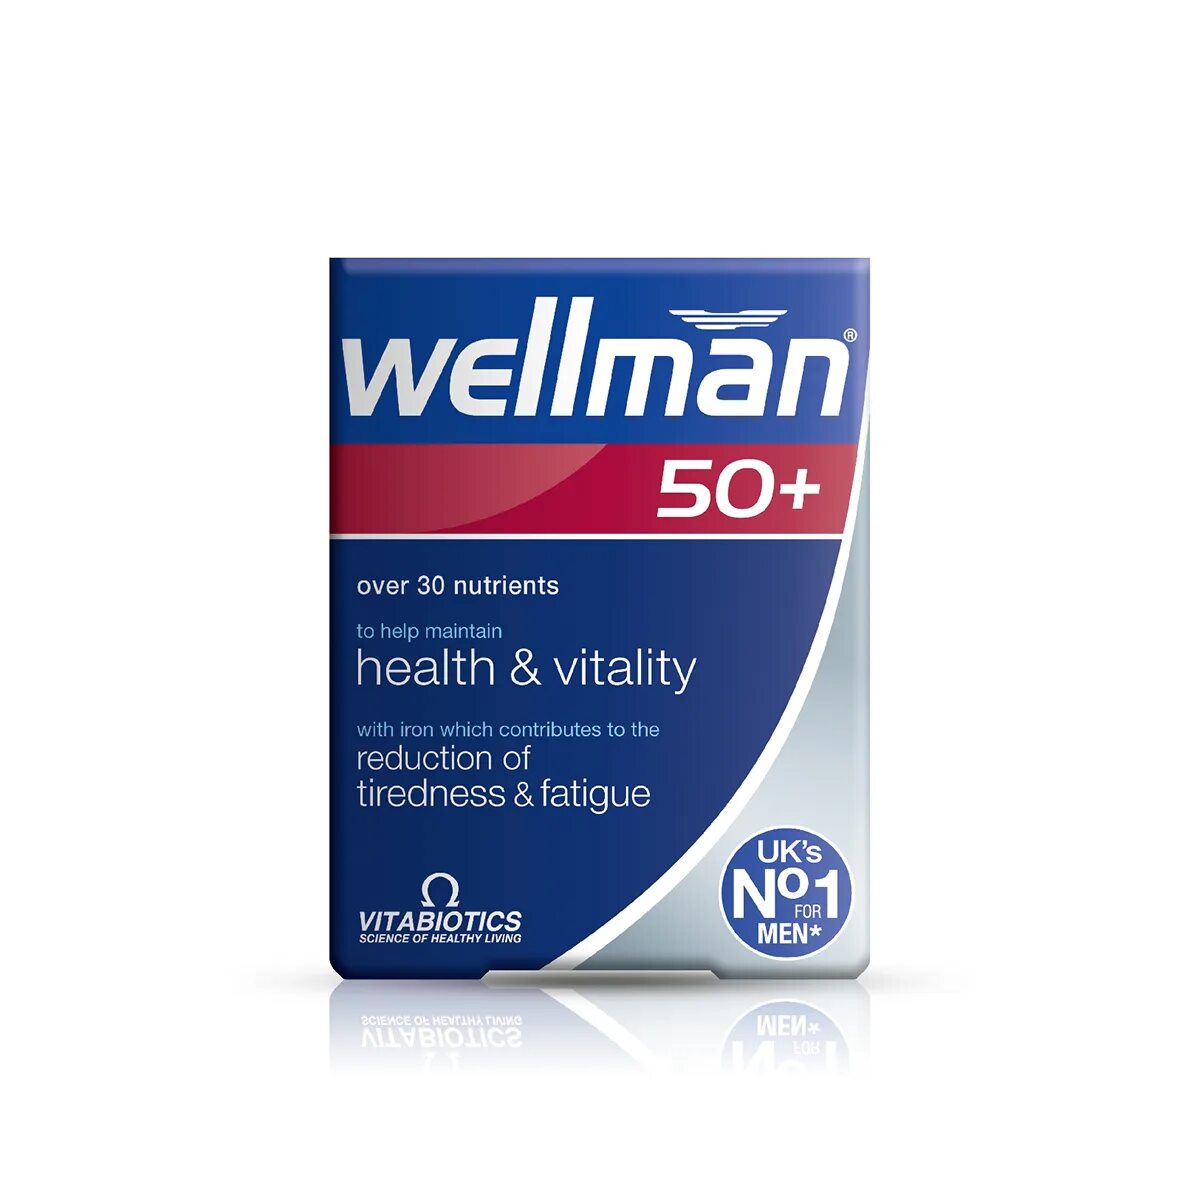 Wellman витамины для мужчин. Wellman 50+ витамины. Wellman 50 + Health Vitality. Wellman витамины для мужчин 50+. Велмен 50 витамины для мужчин.